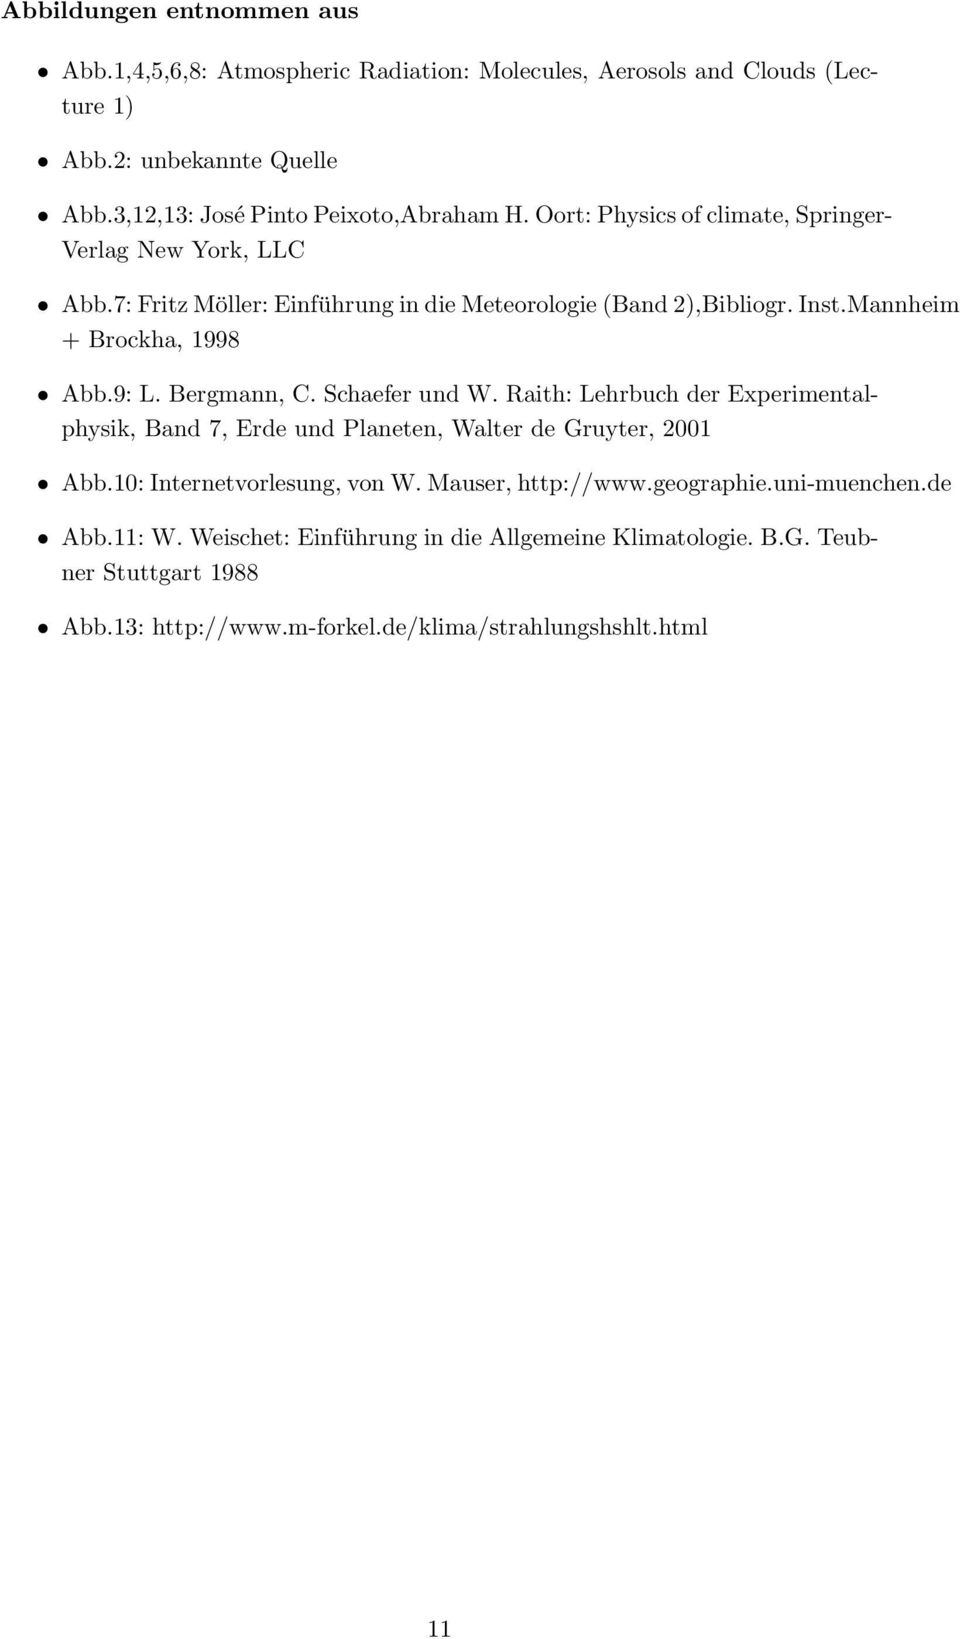 Bergmann, C. Schaefer und W. Raith: Lehrbuch der Experimentalphysik, Band 7, Erde und Planeten, Walter de Gruyter, 2001 Abb.10: Internetvorlesung, von W. Mauser, http://www.